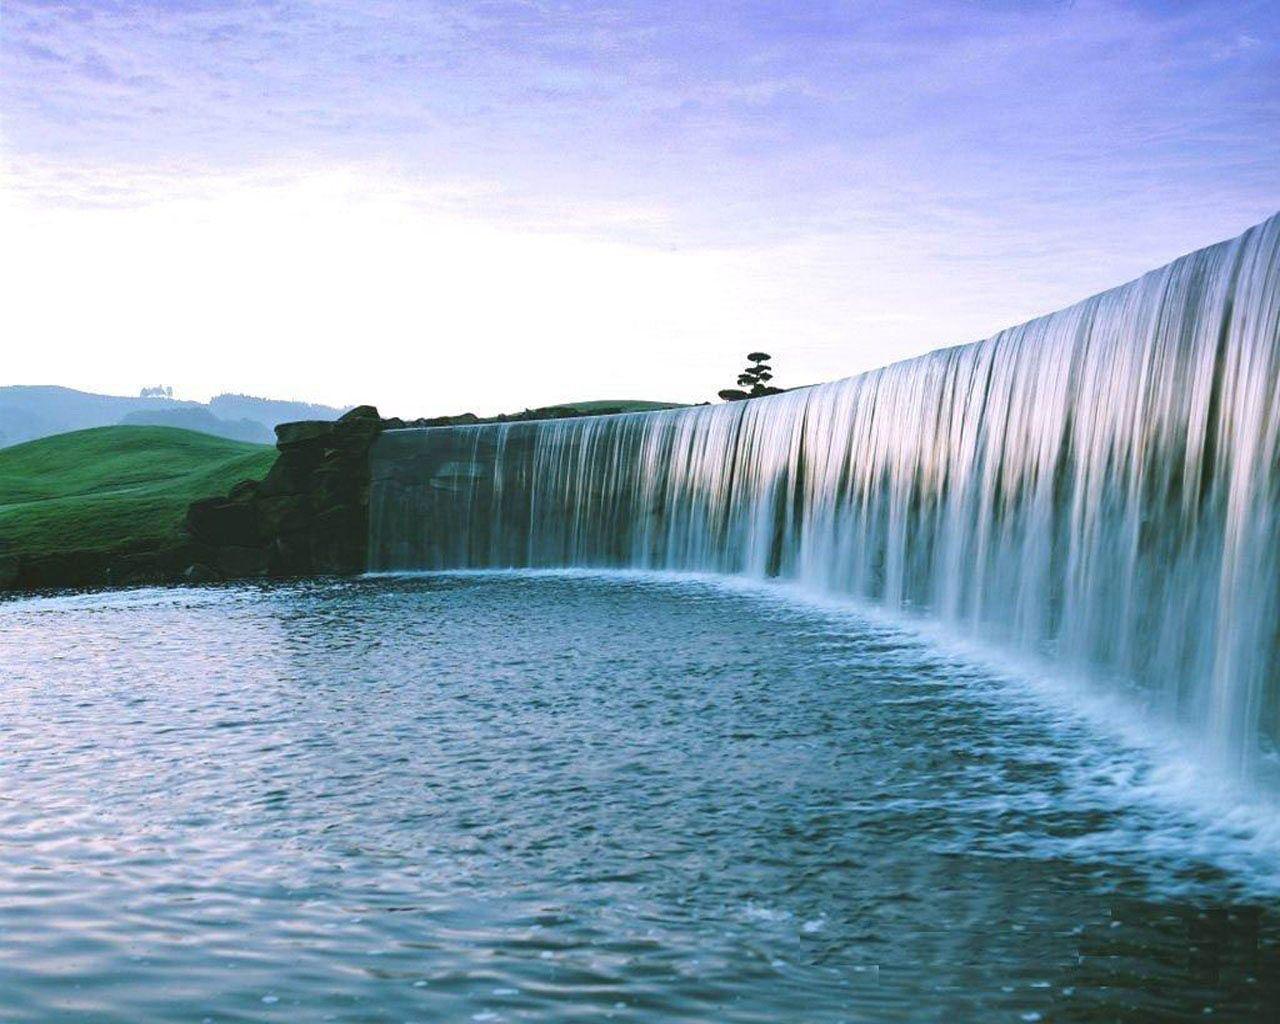 Gói hình nền thác nước đẹp nhất 1280x1024 cho máy tính xách tay đẹp nhất.  Thác nước